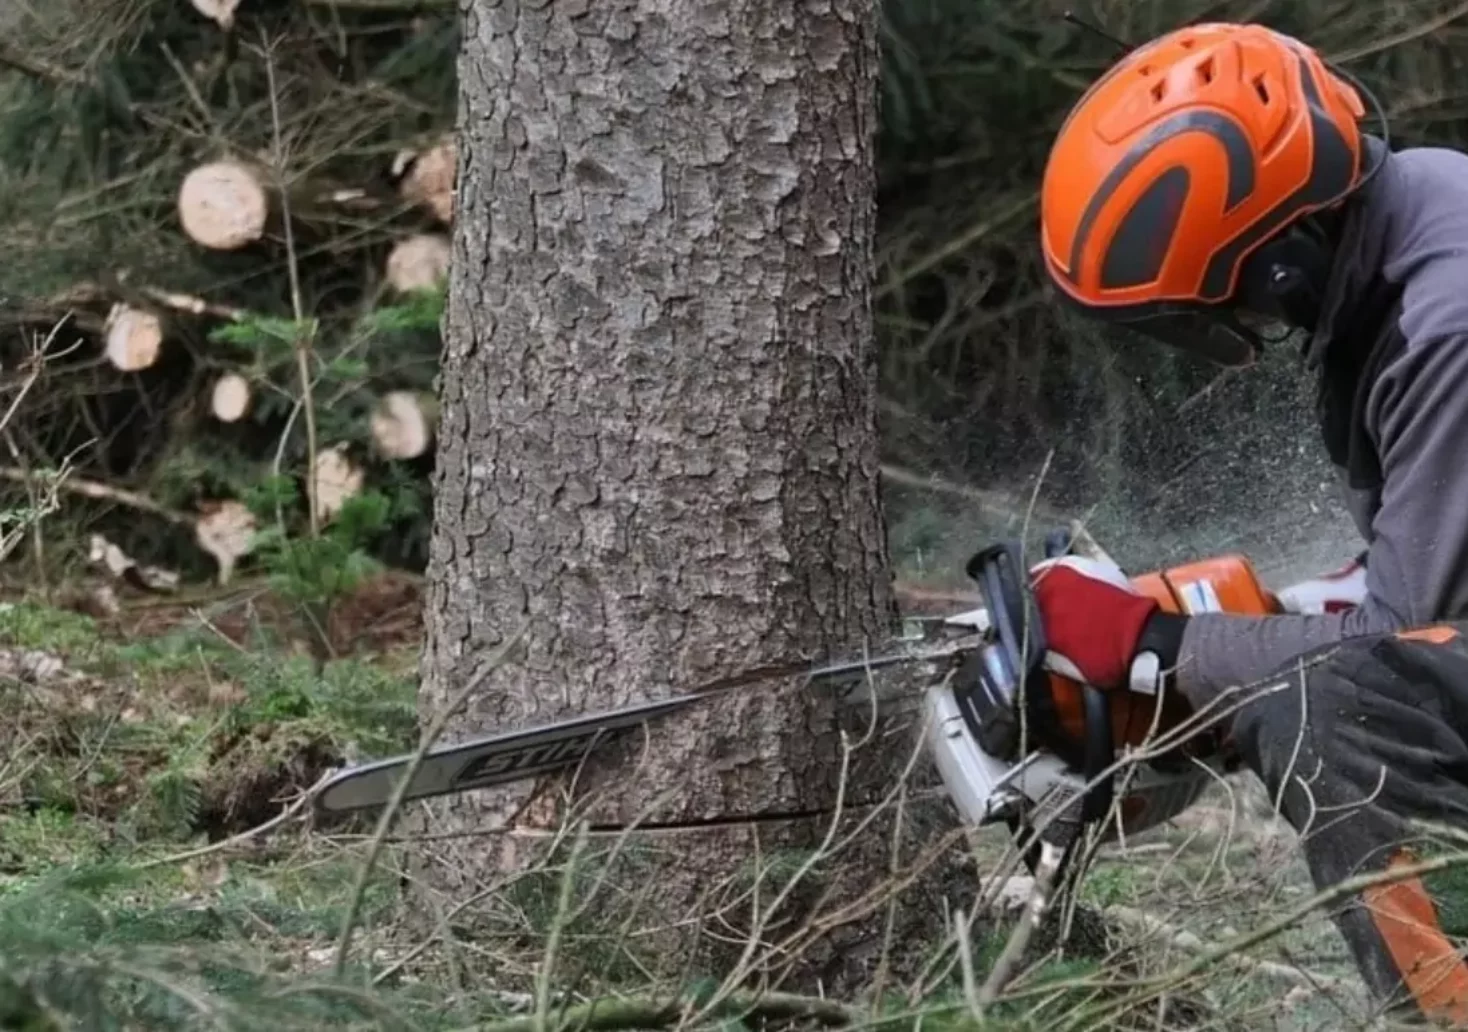 Ein Bild auf 5min.at zeigt einen Forstarbeiter, der mit einer Motorsäge einen Baum umsägt.